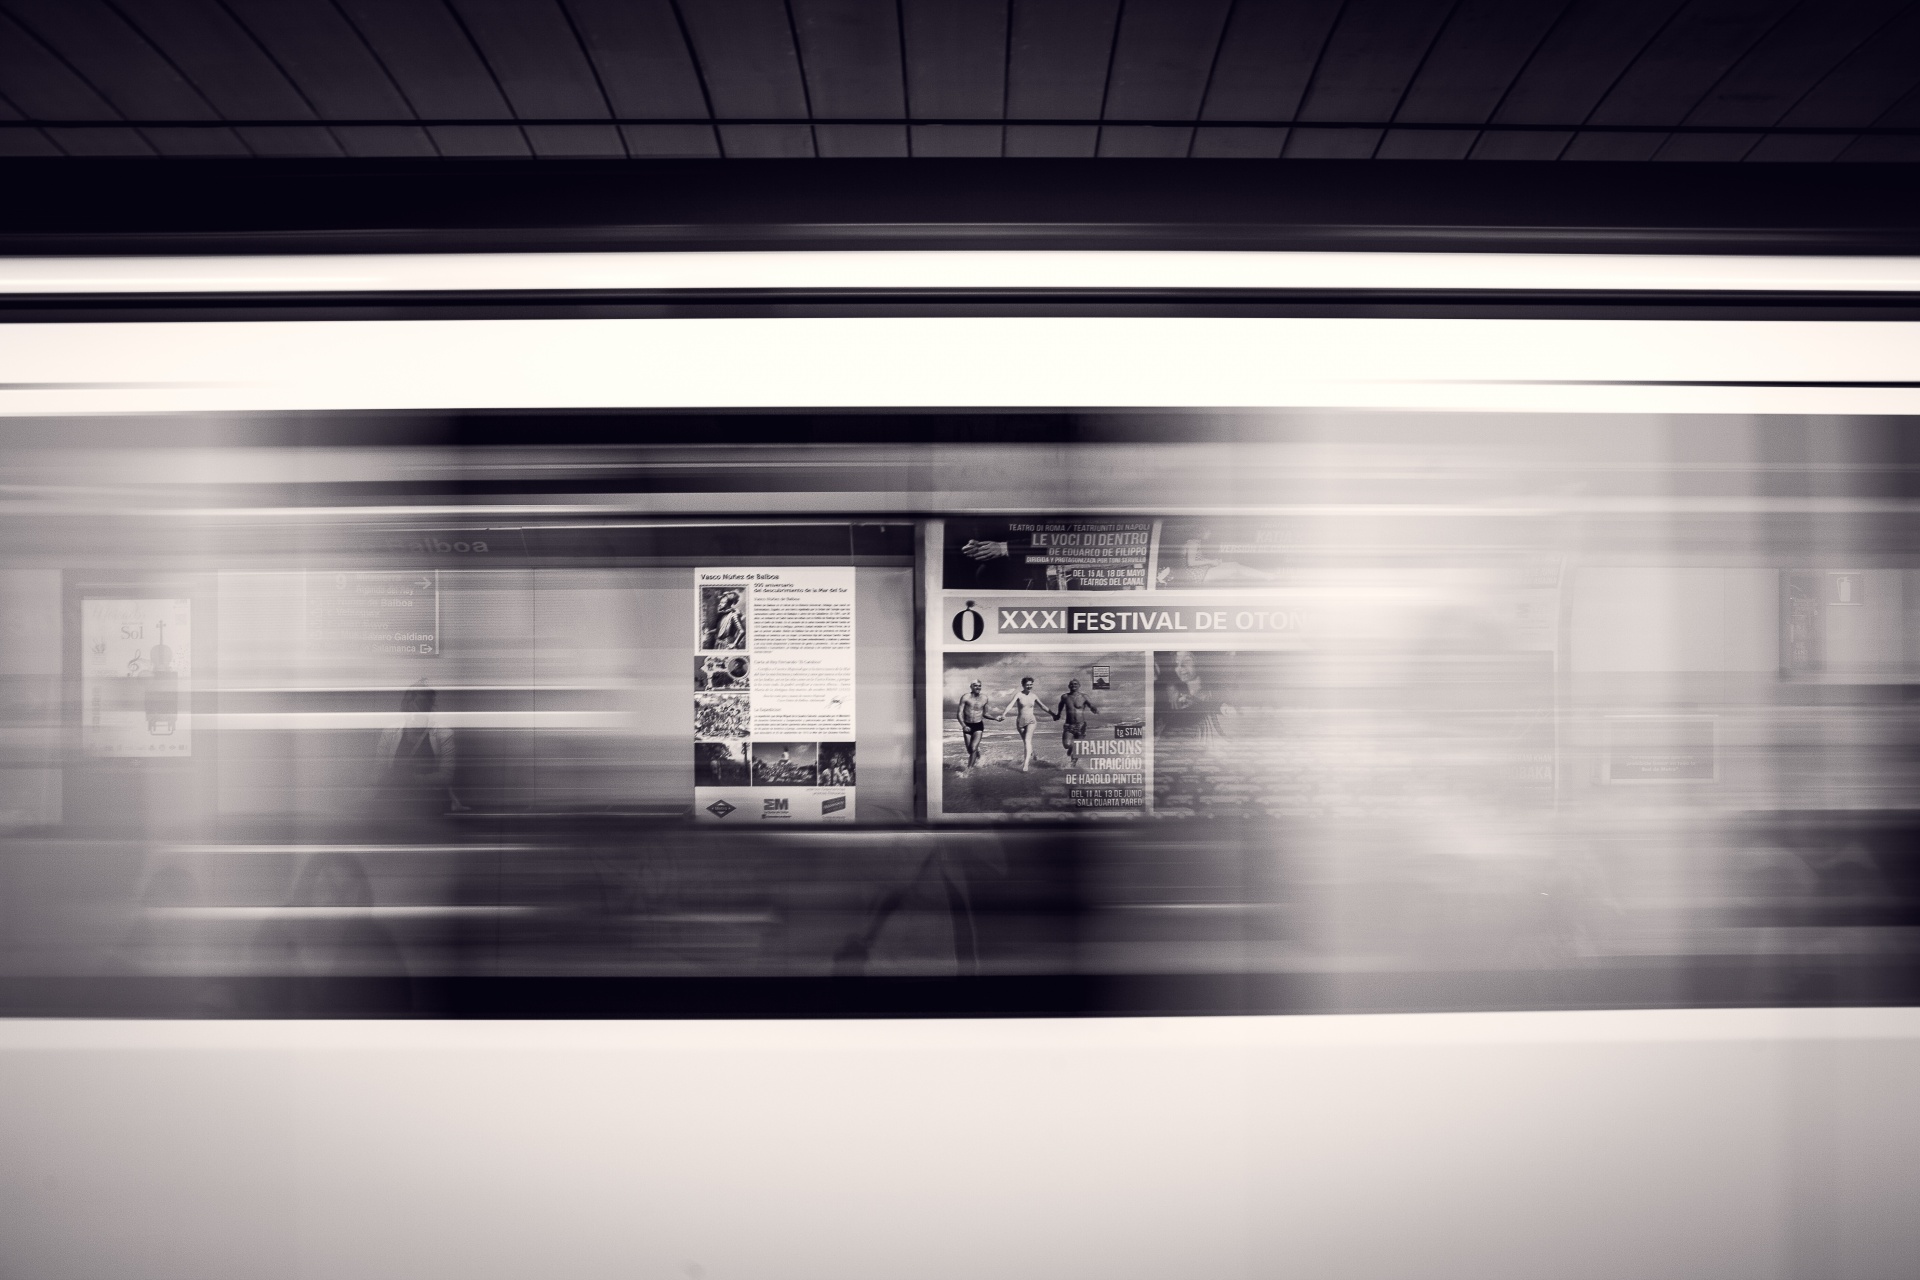 Subway train in a motion blur